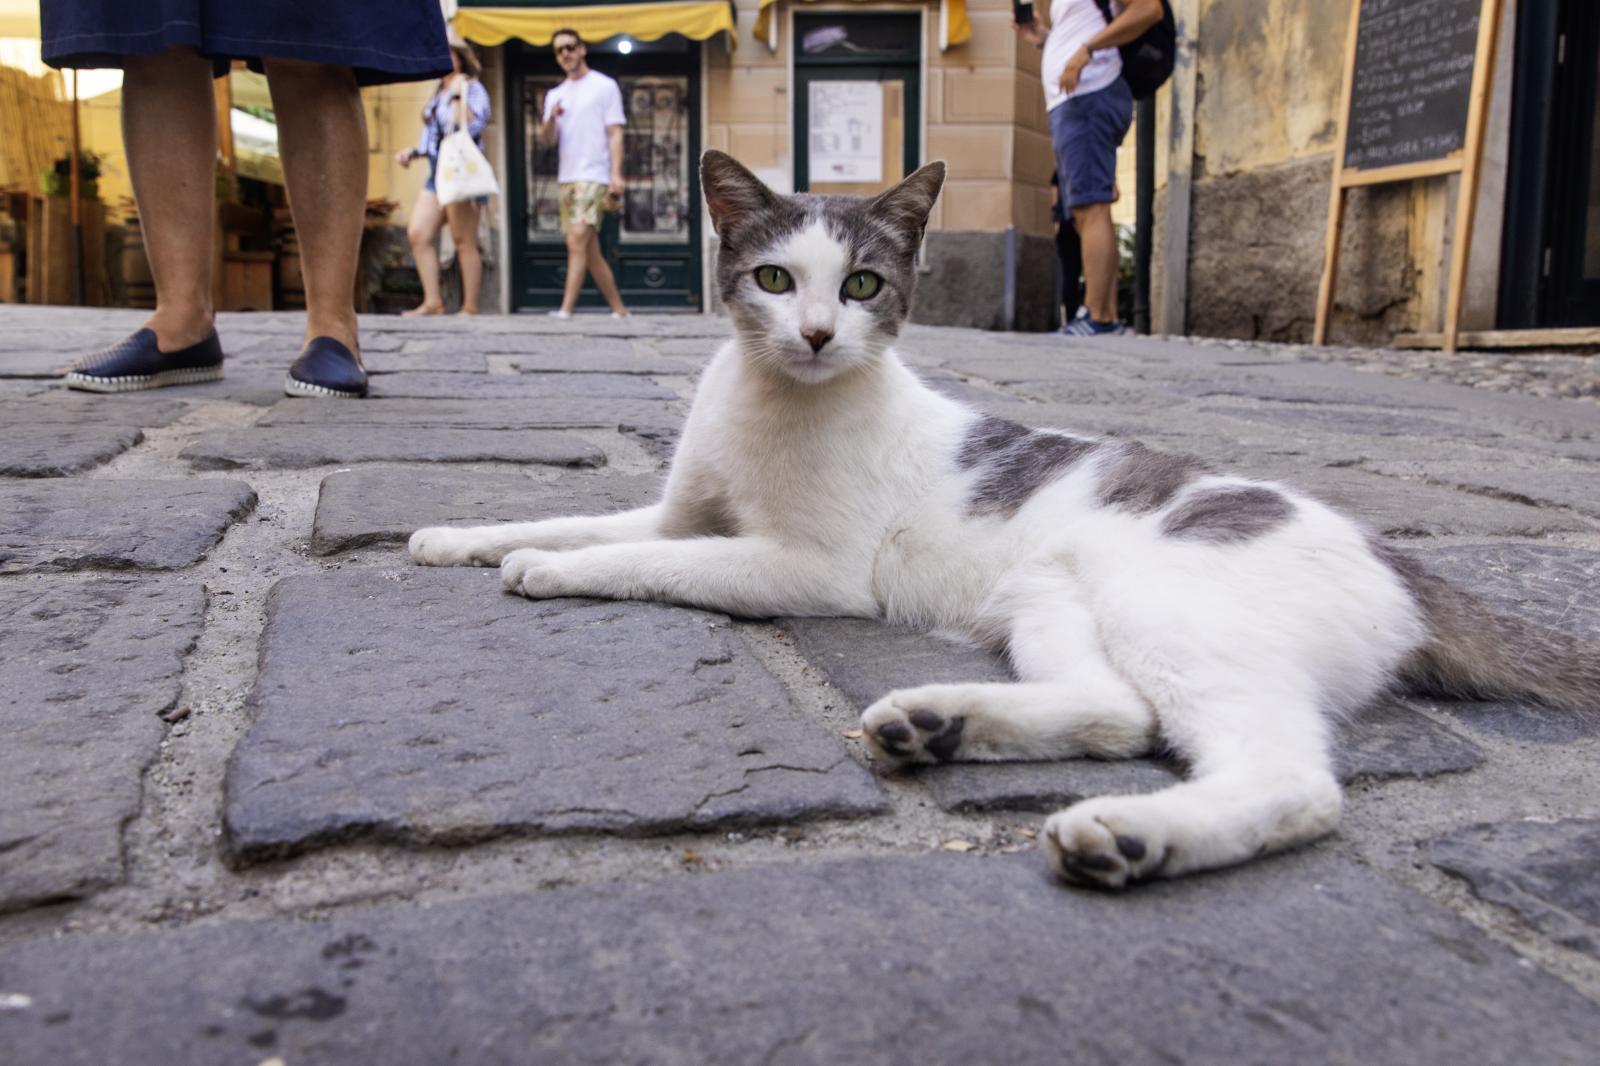 Cat in Cinque Terre | Buy this image